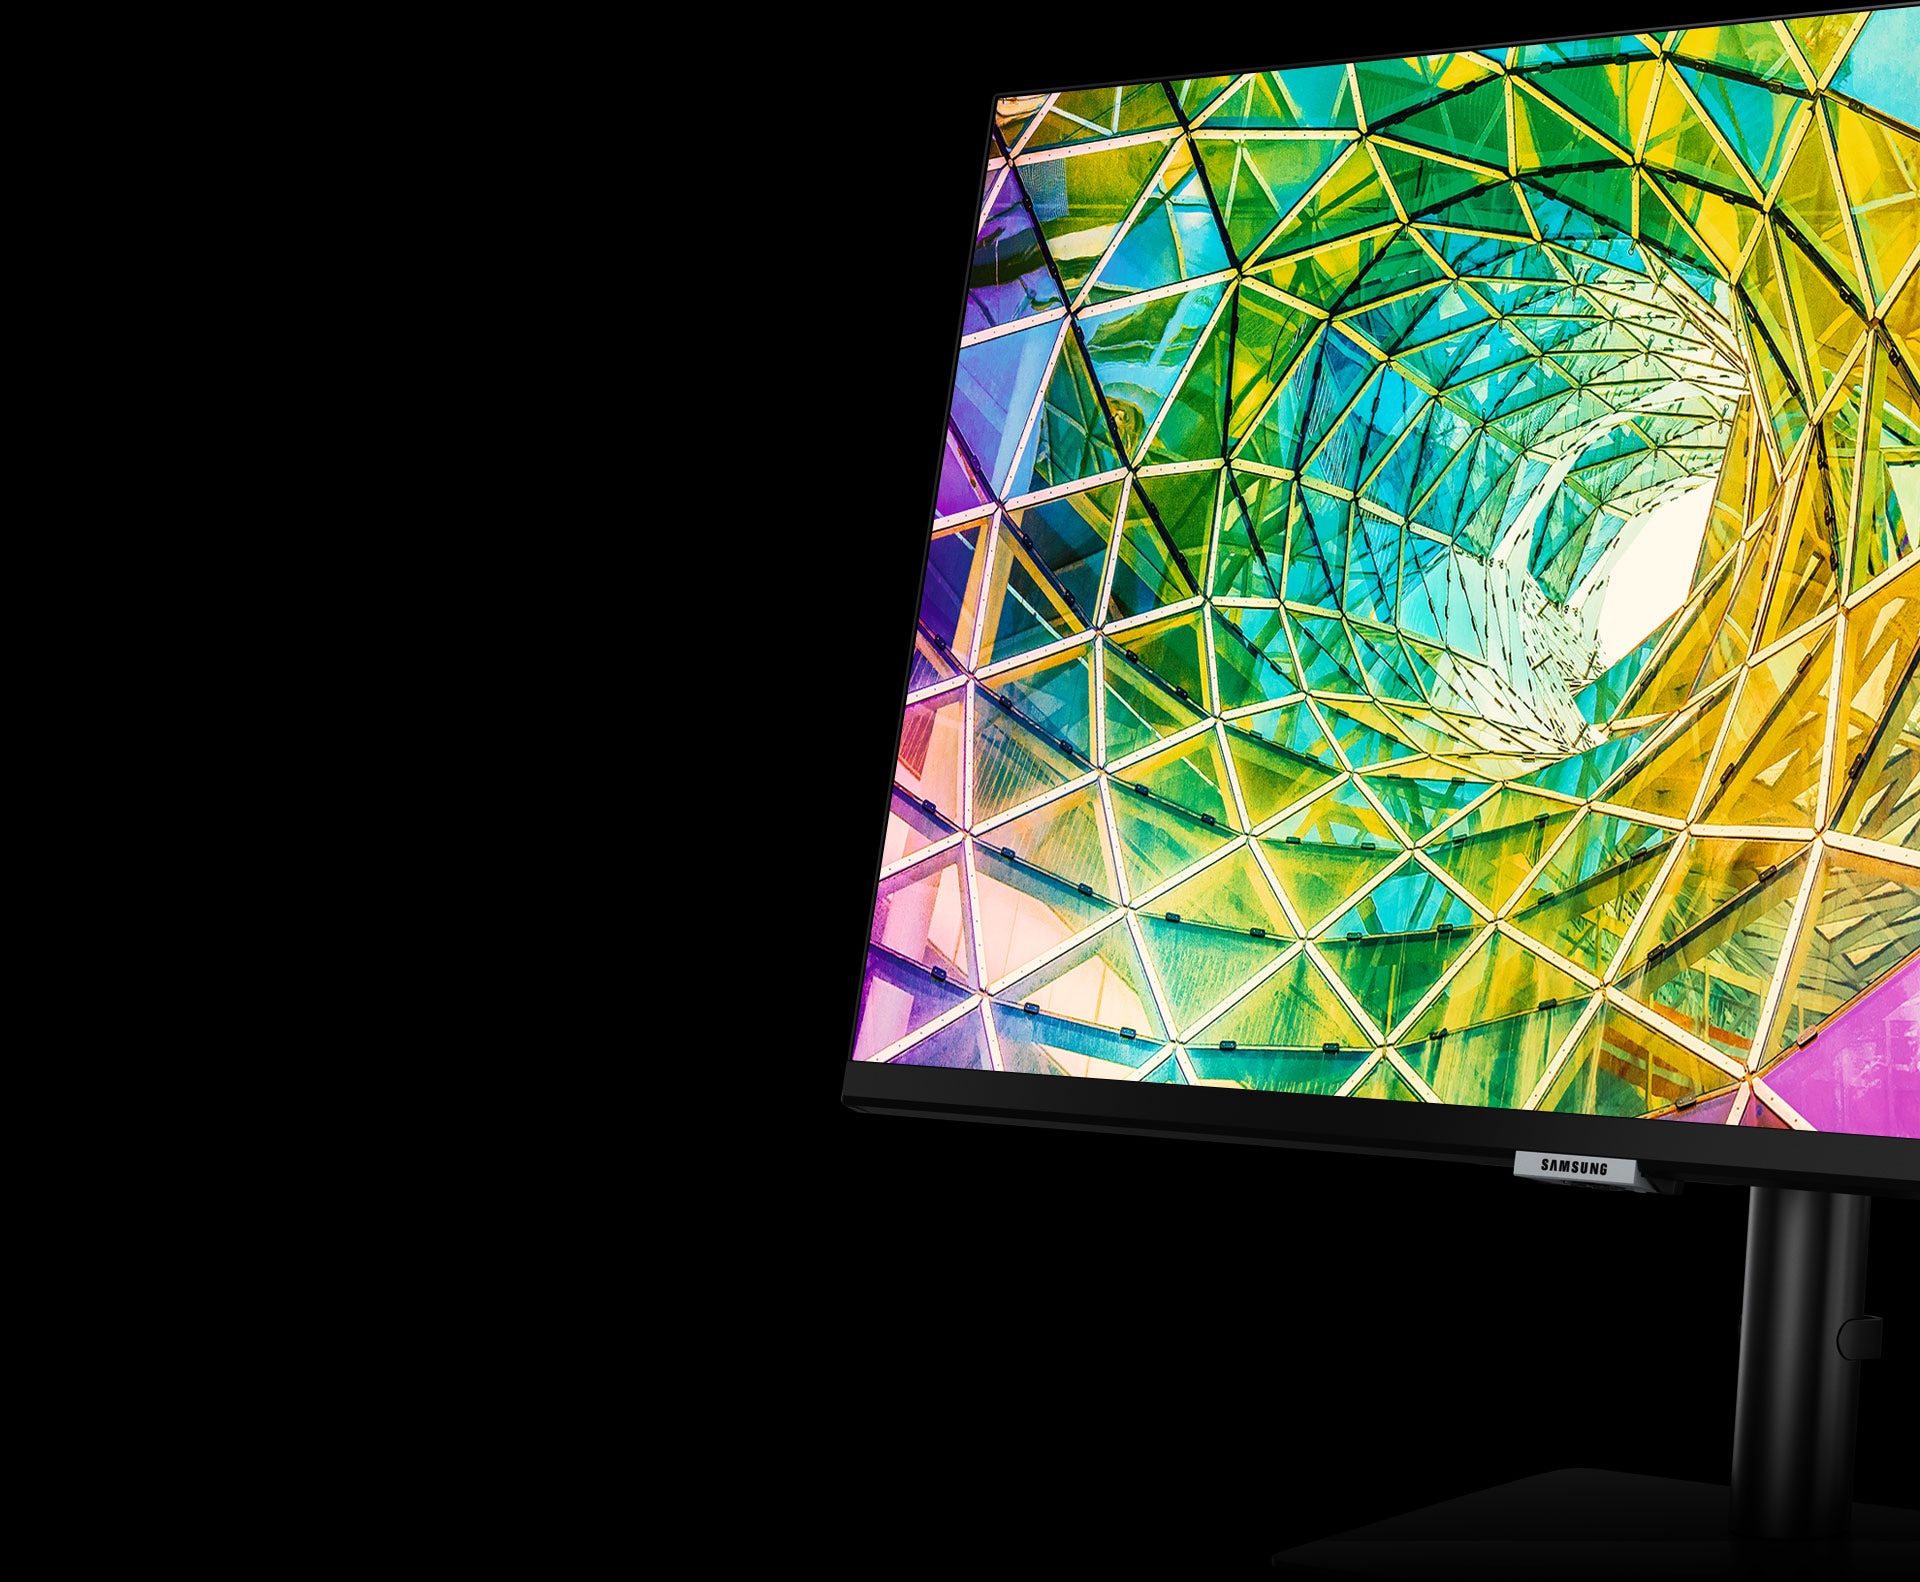 Lo schermo del monitor mostra un vortice di vetro colorato in giallo, verde, rosa e viola brillanti. Il monitor viene ruotato a sinistra e inclinato leggermente all’indietro usando il supporto dello schermo.